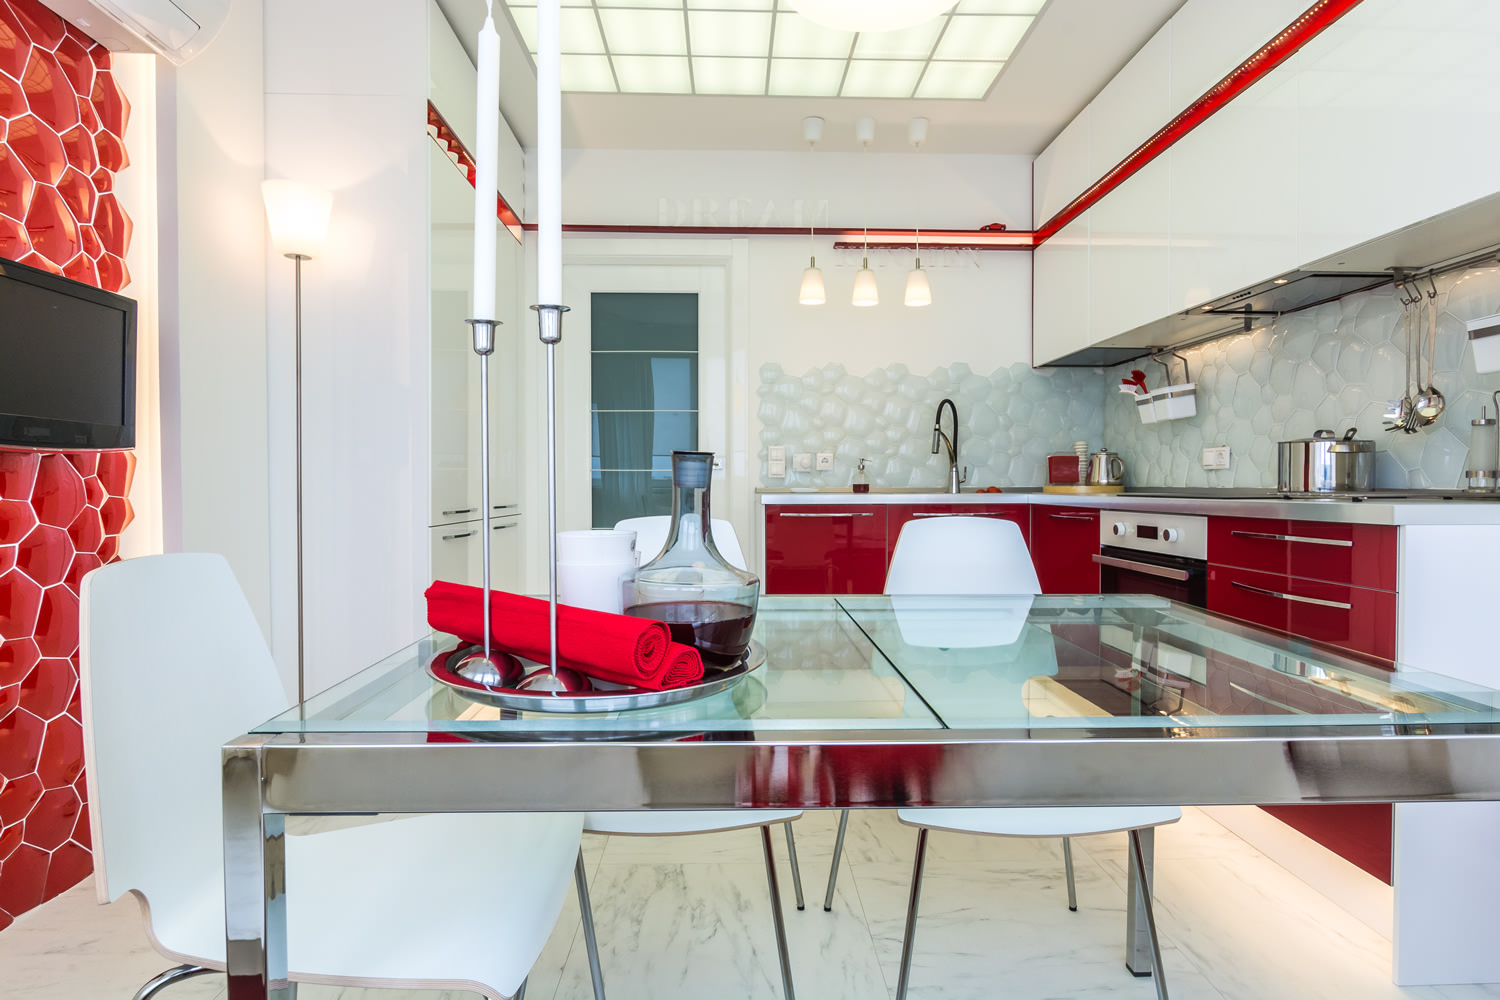 Красная Кухня В Интерьере Квартиры Фото